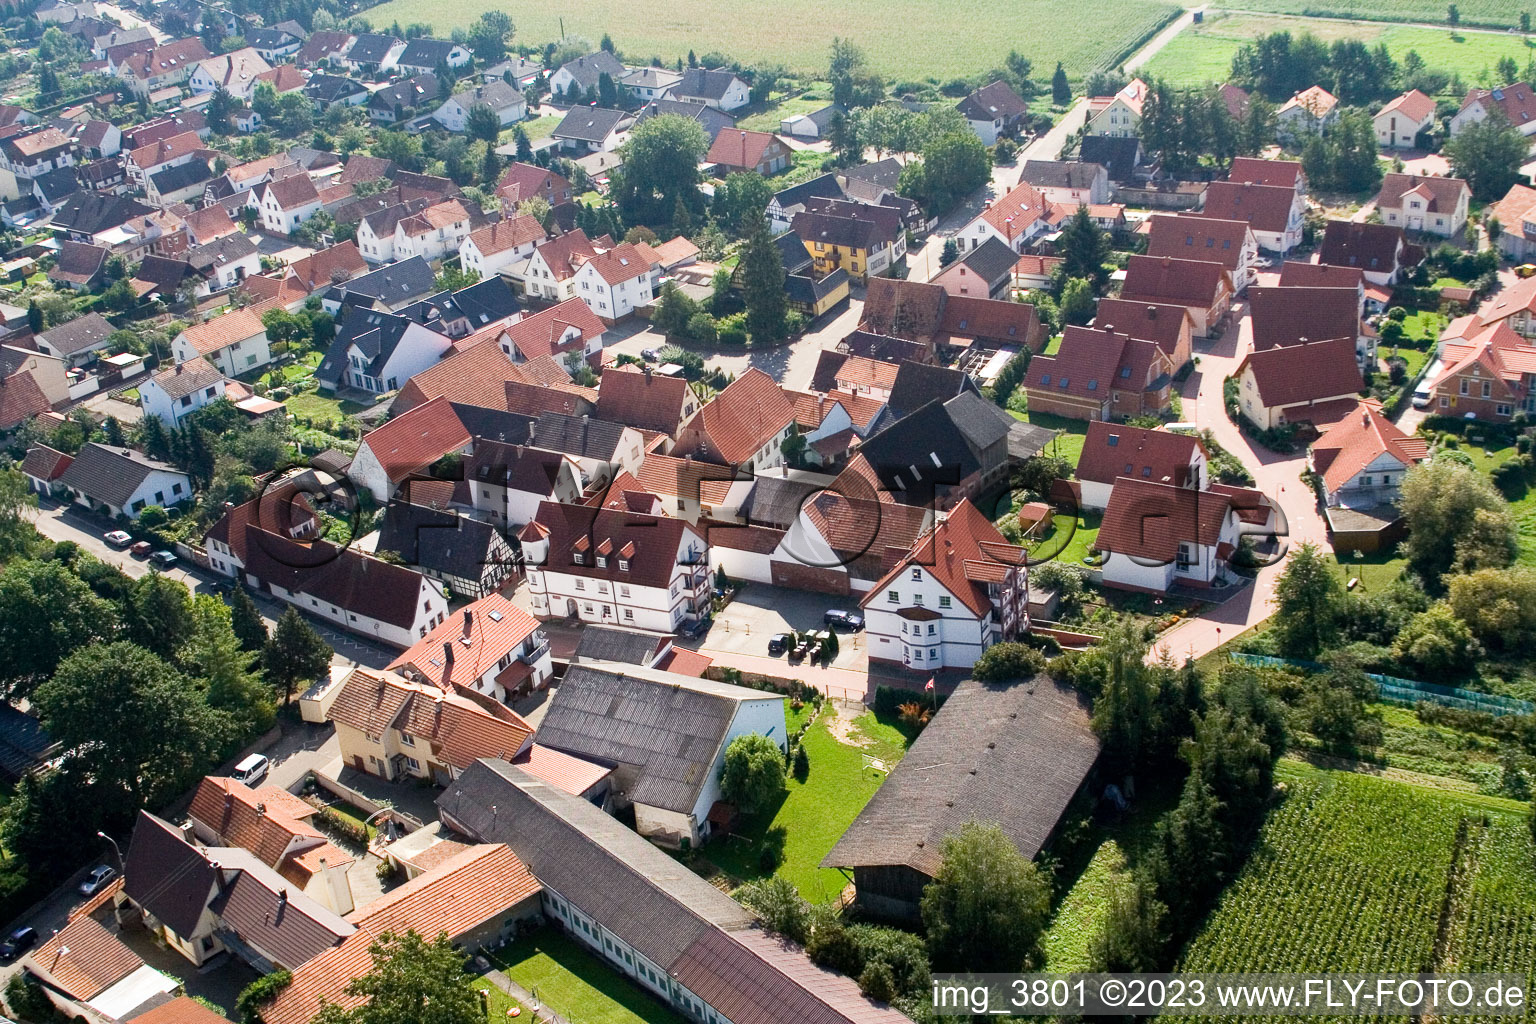 Minfeld dans le département Rhénanie-Palatinat, Allemagne du point de vue du drone